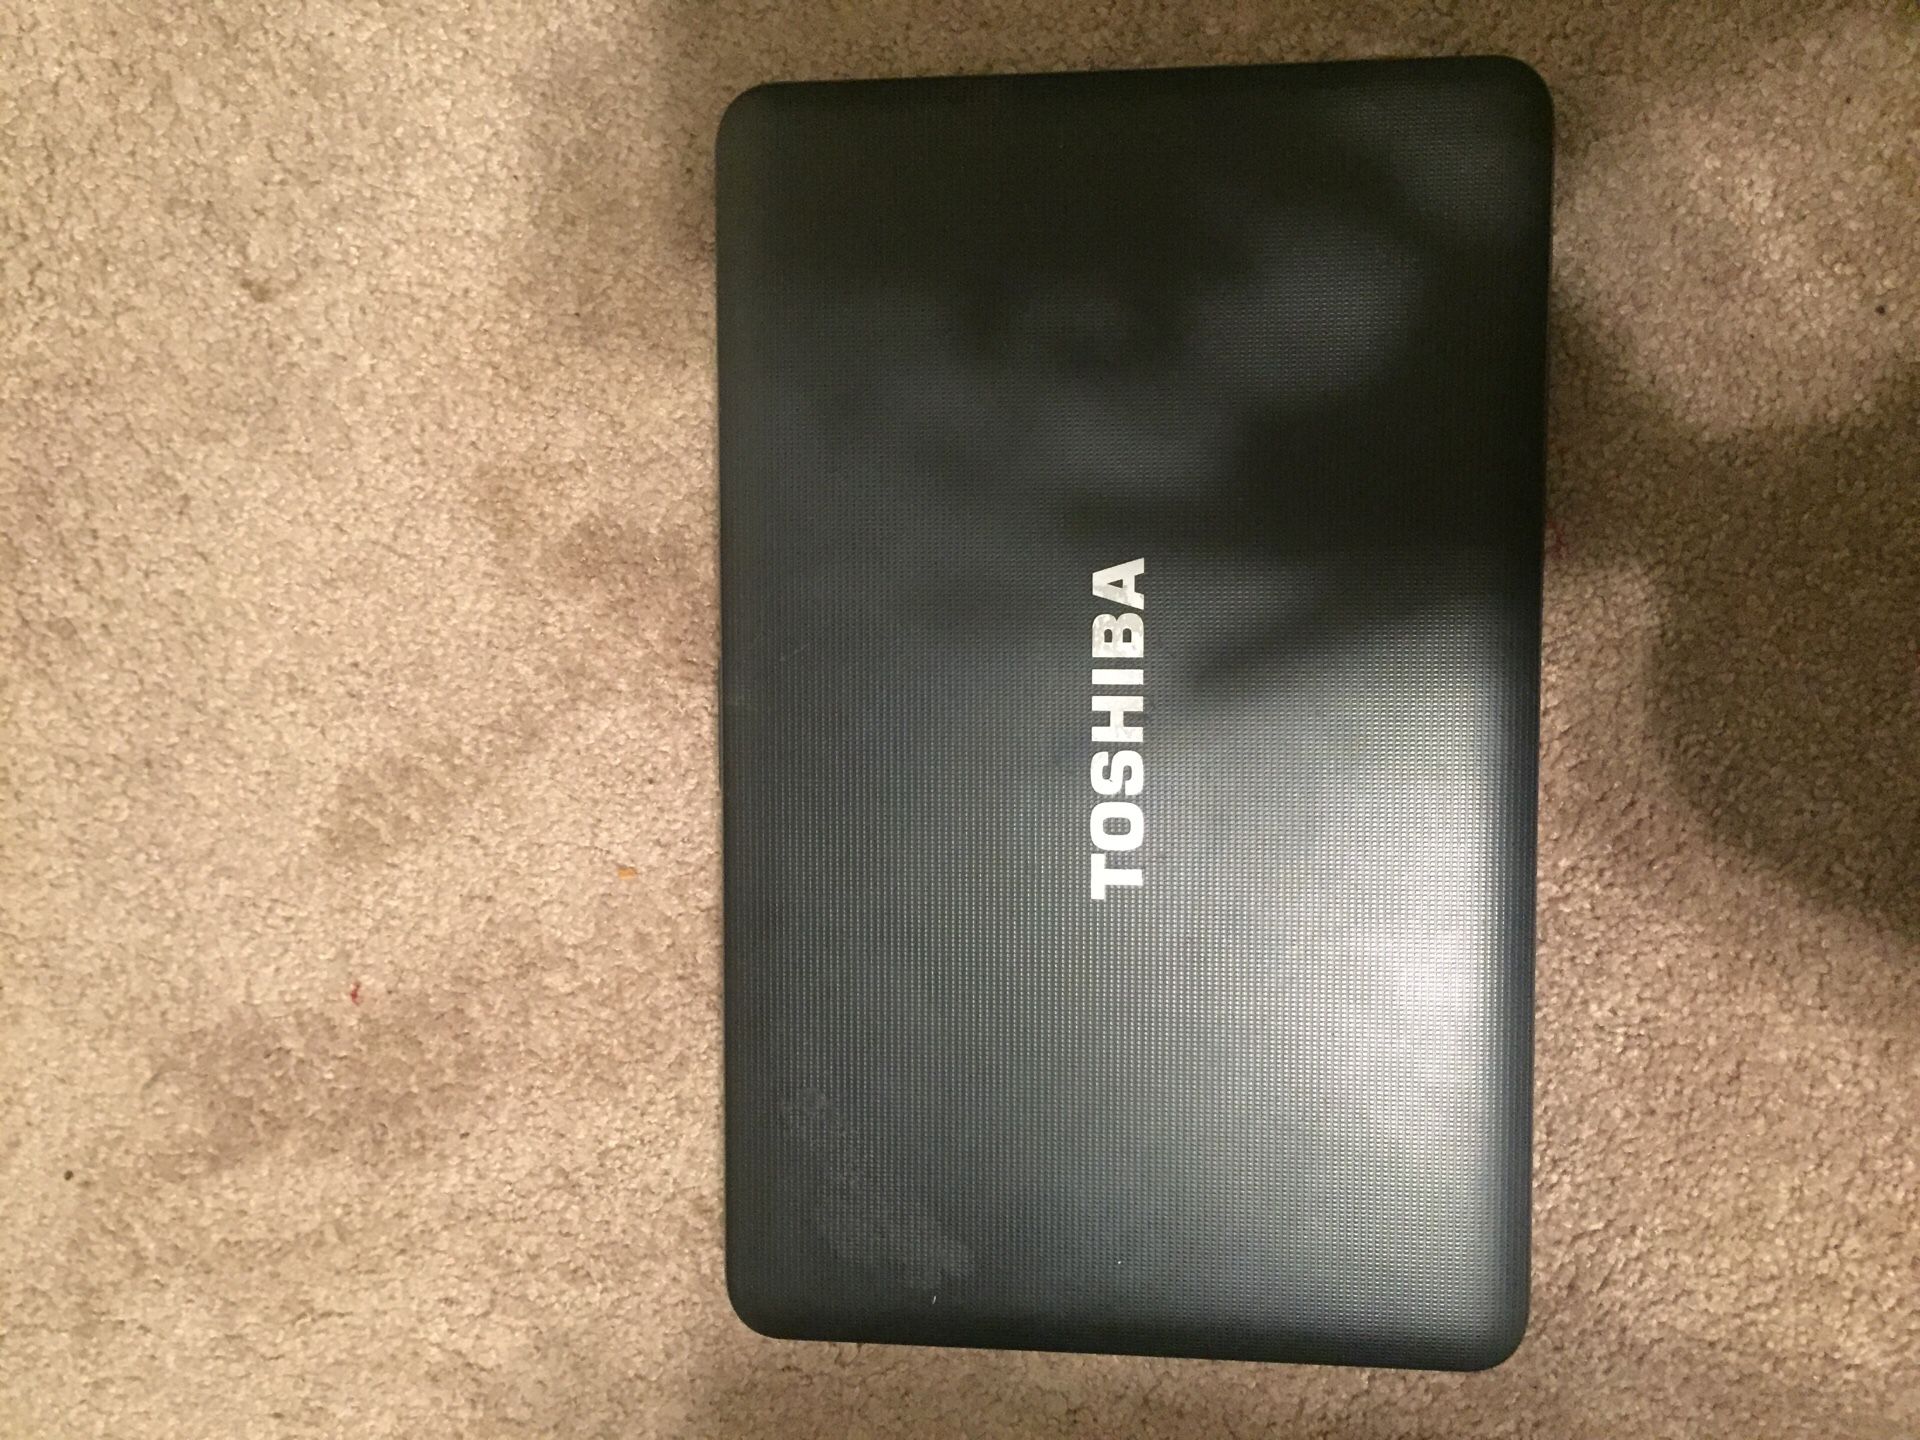 Toshiba Satellite Laptop w/ charger